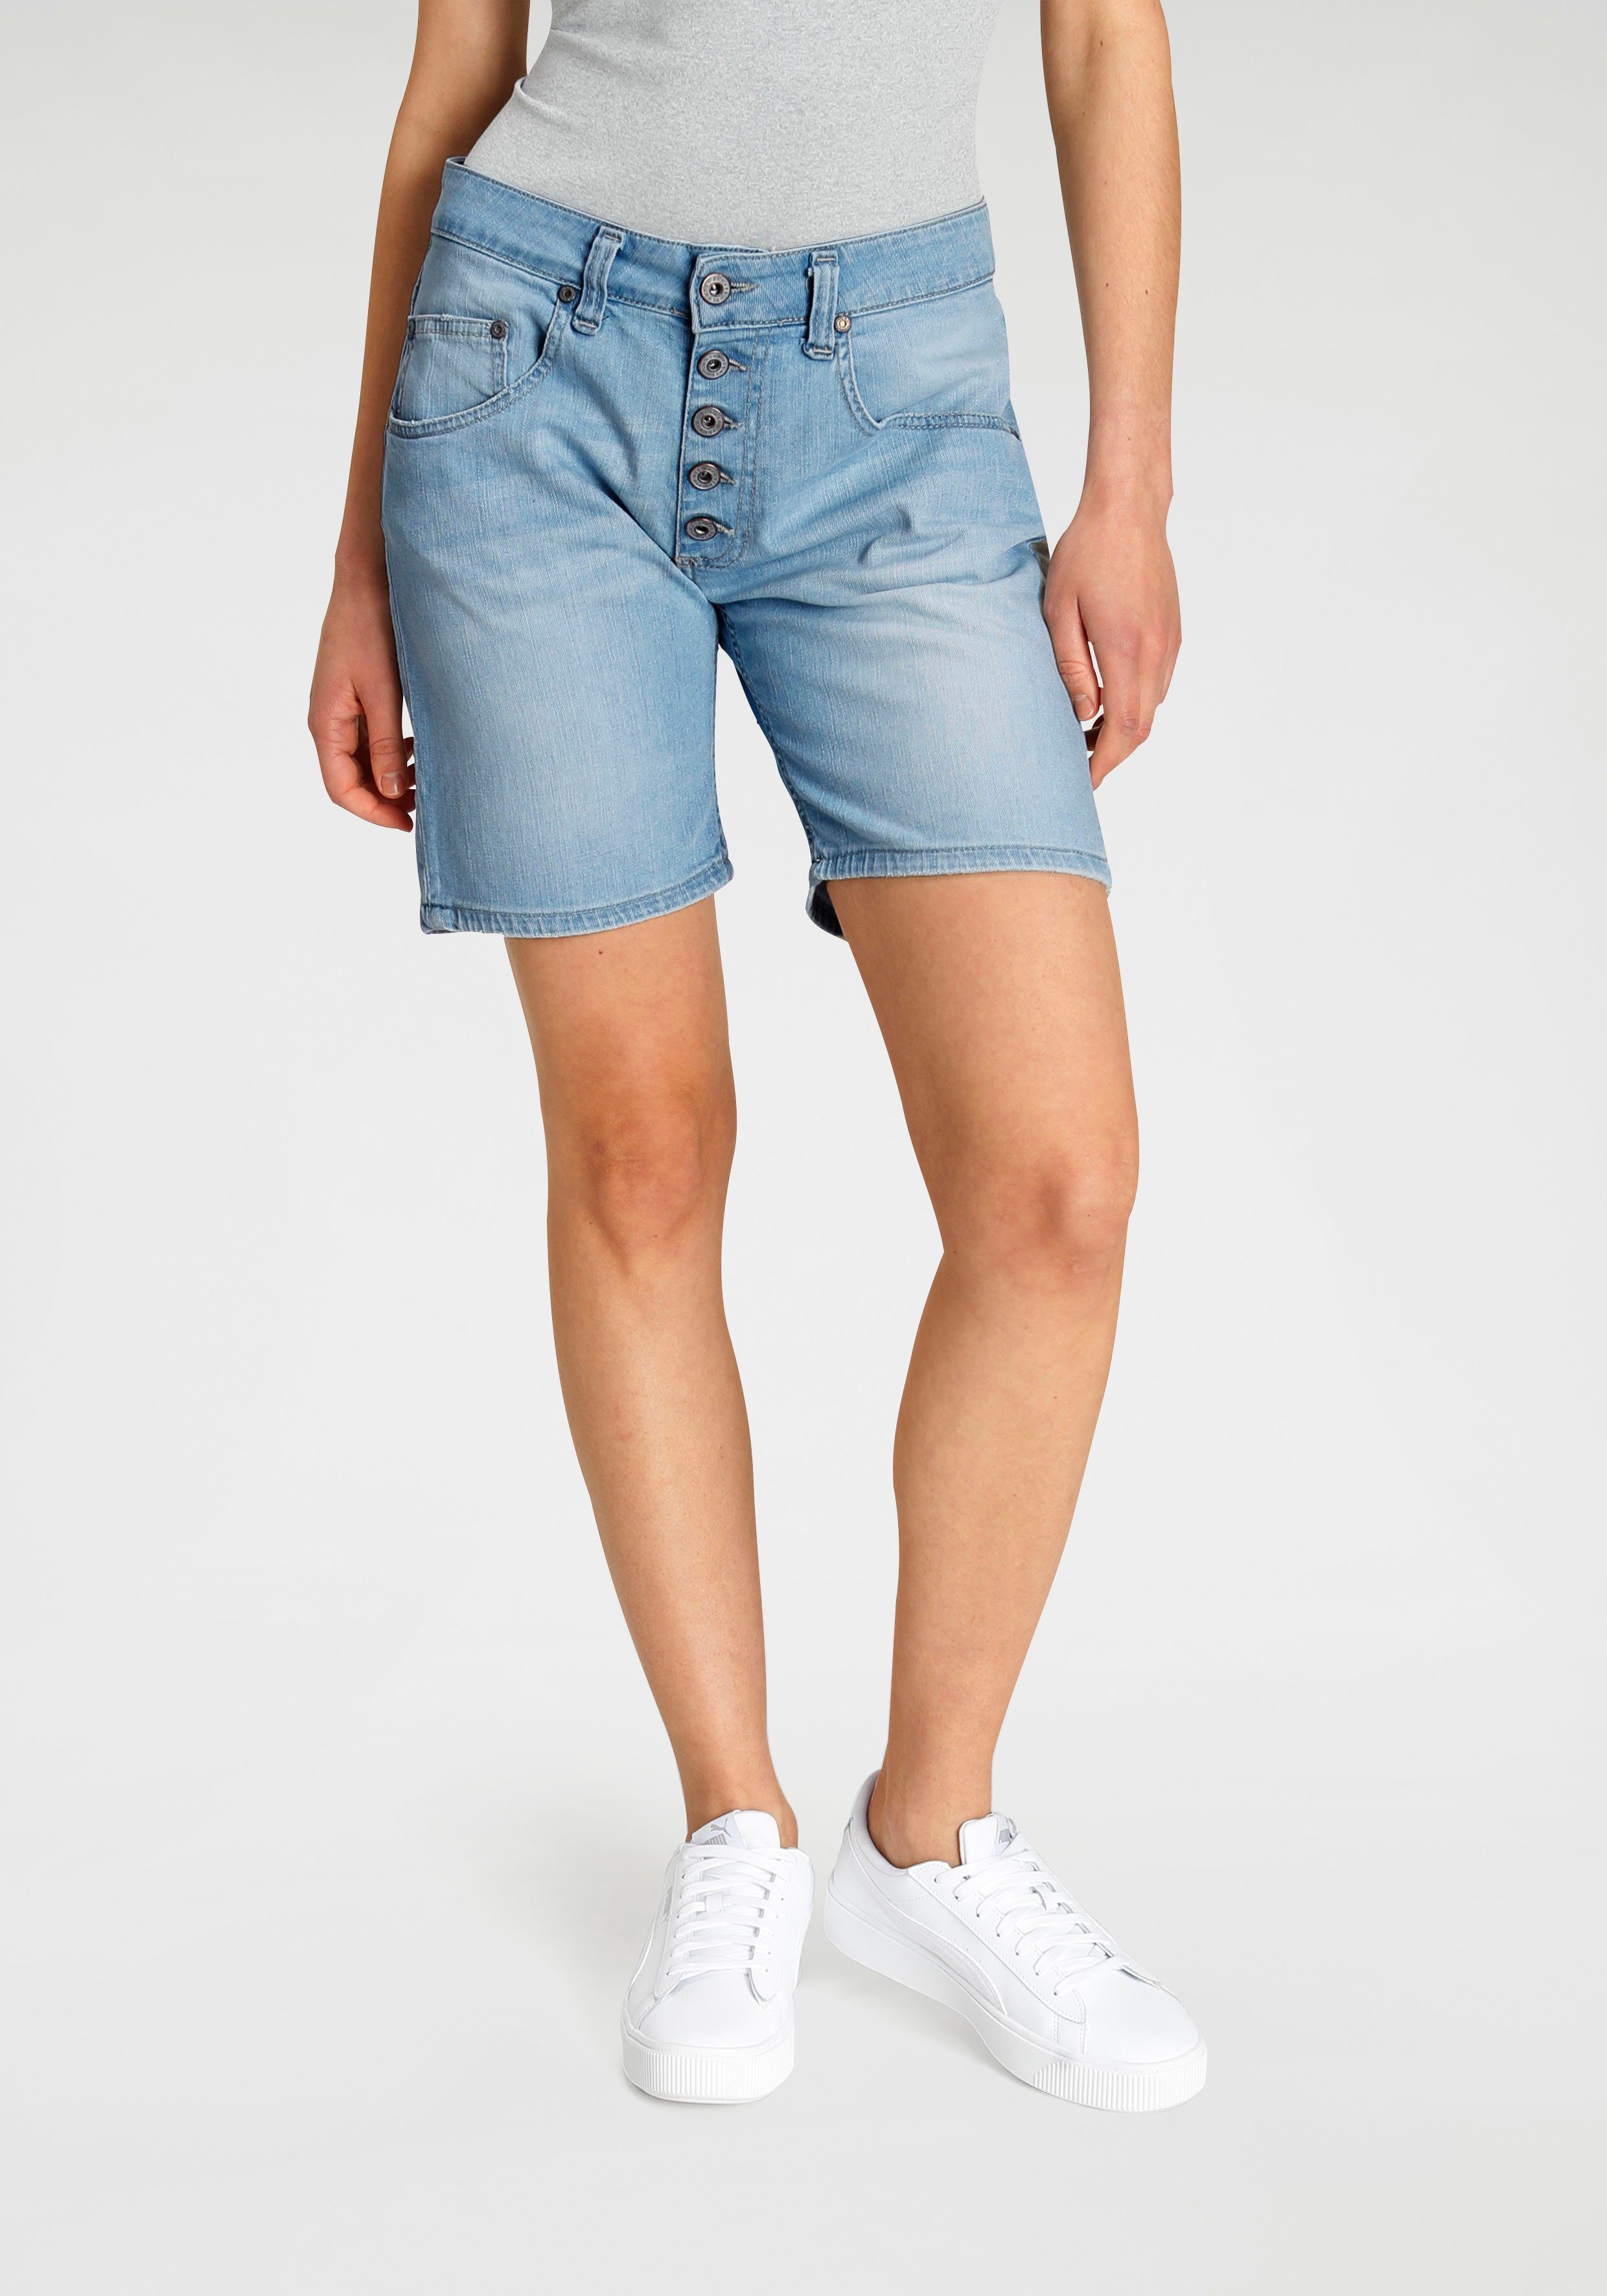 Damen Hosen Please Jeans Jeansbermudas P88A mit sichtbarer Button-Fly Leiste vorn